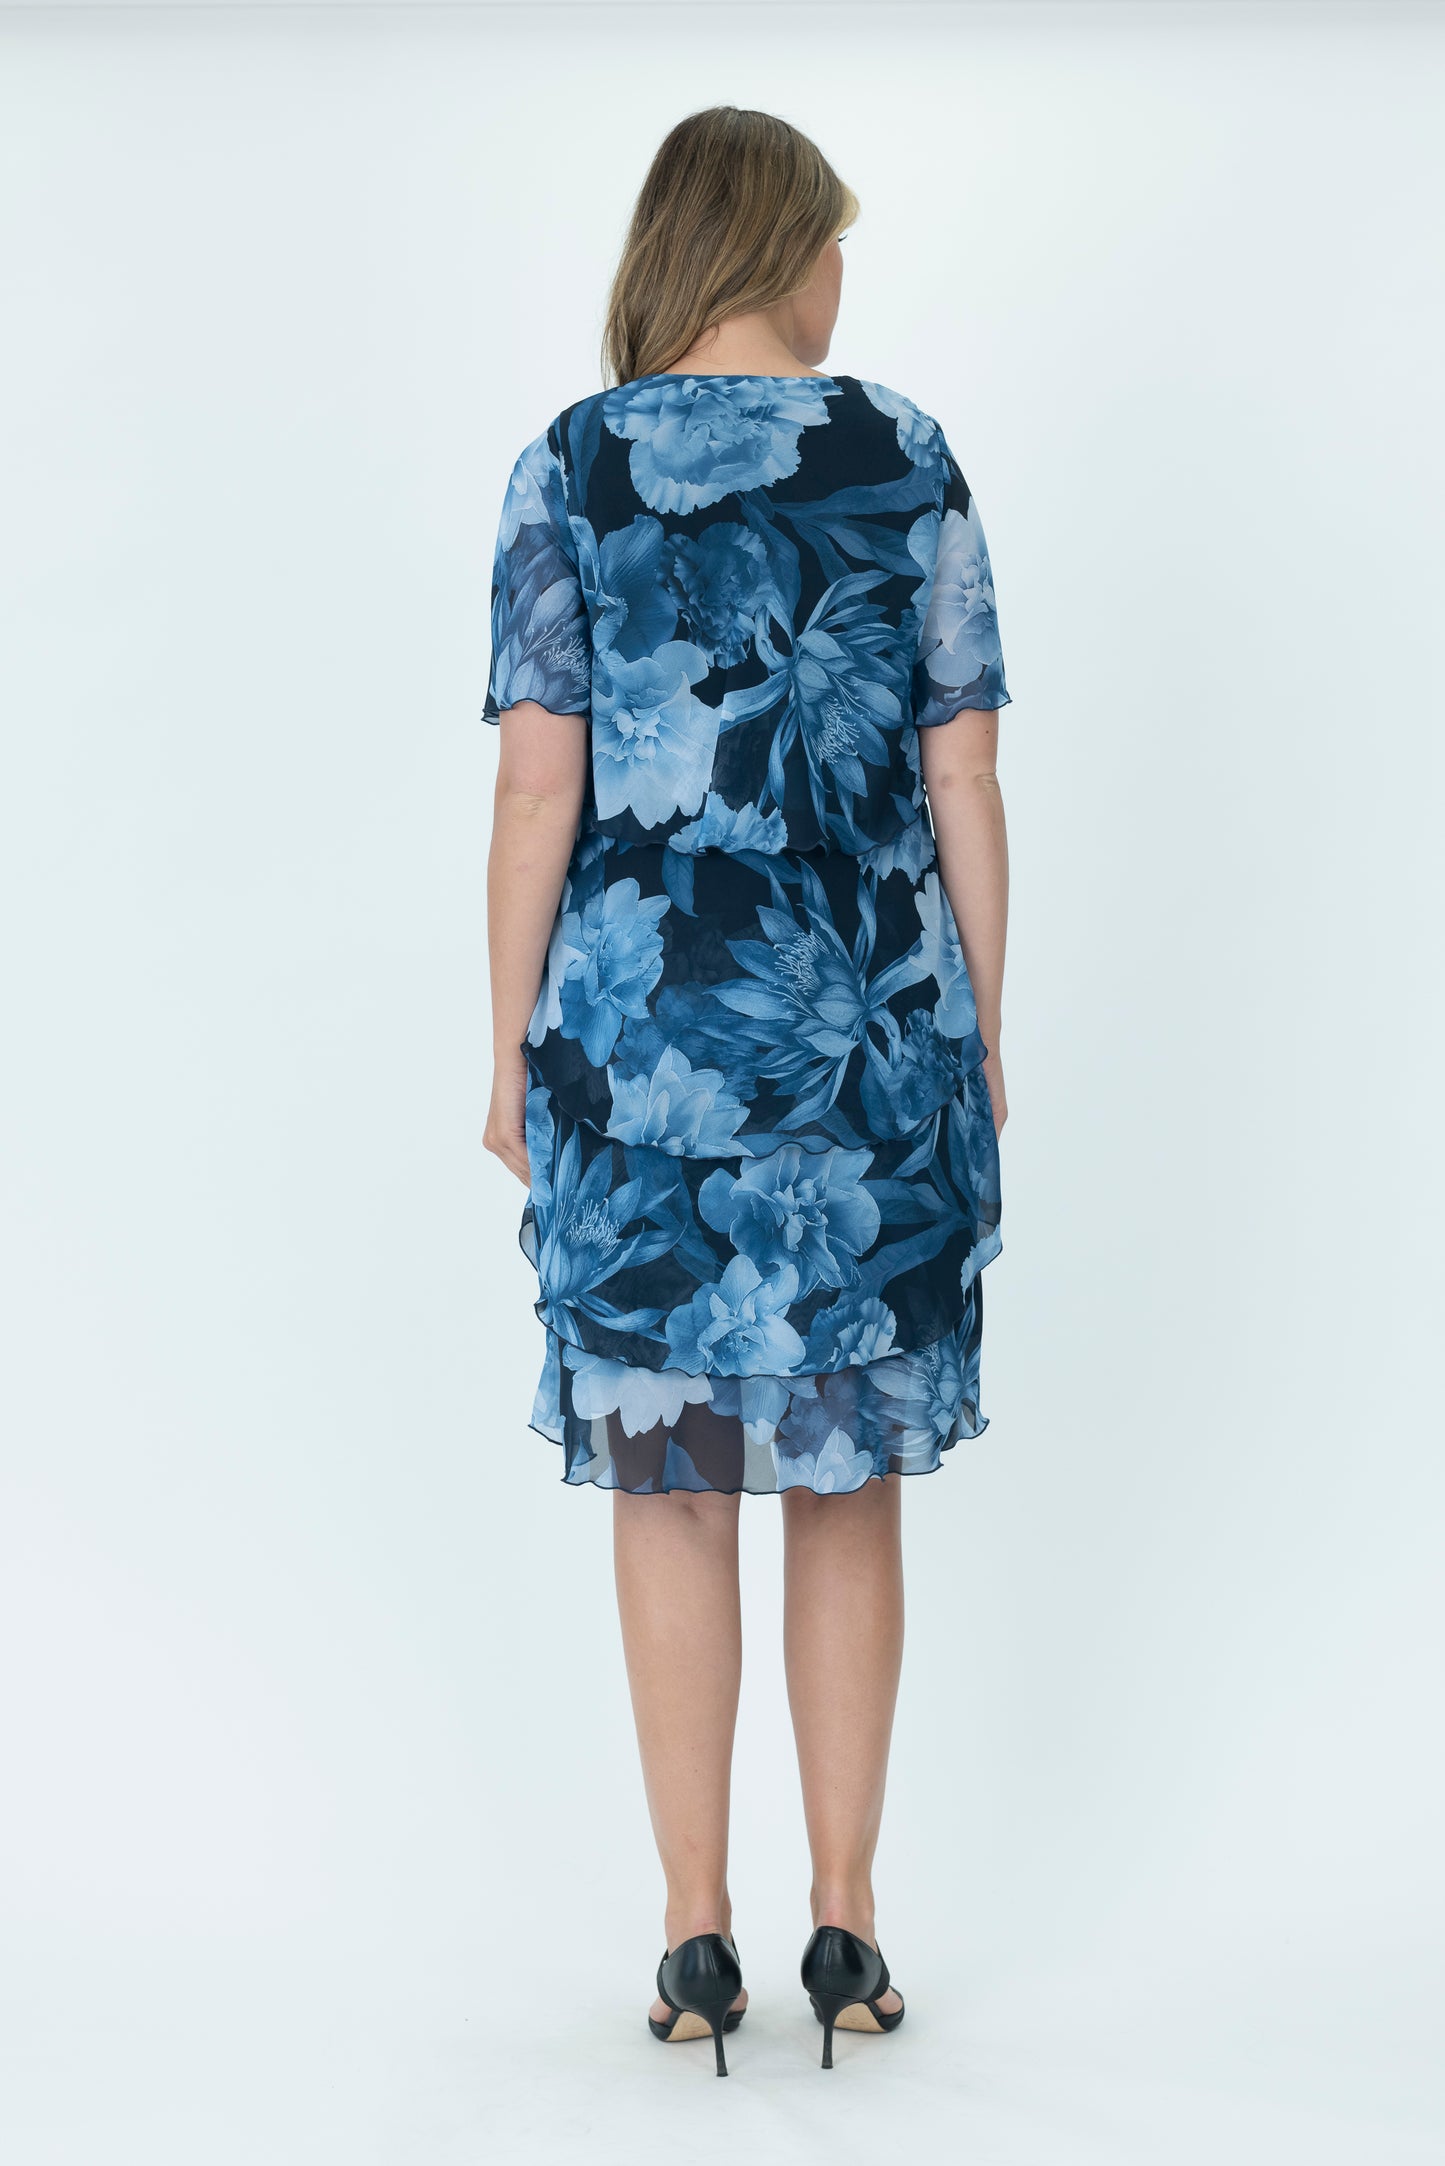 Chiffon Layered Dress - V2735A - Print 2